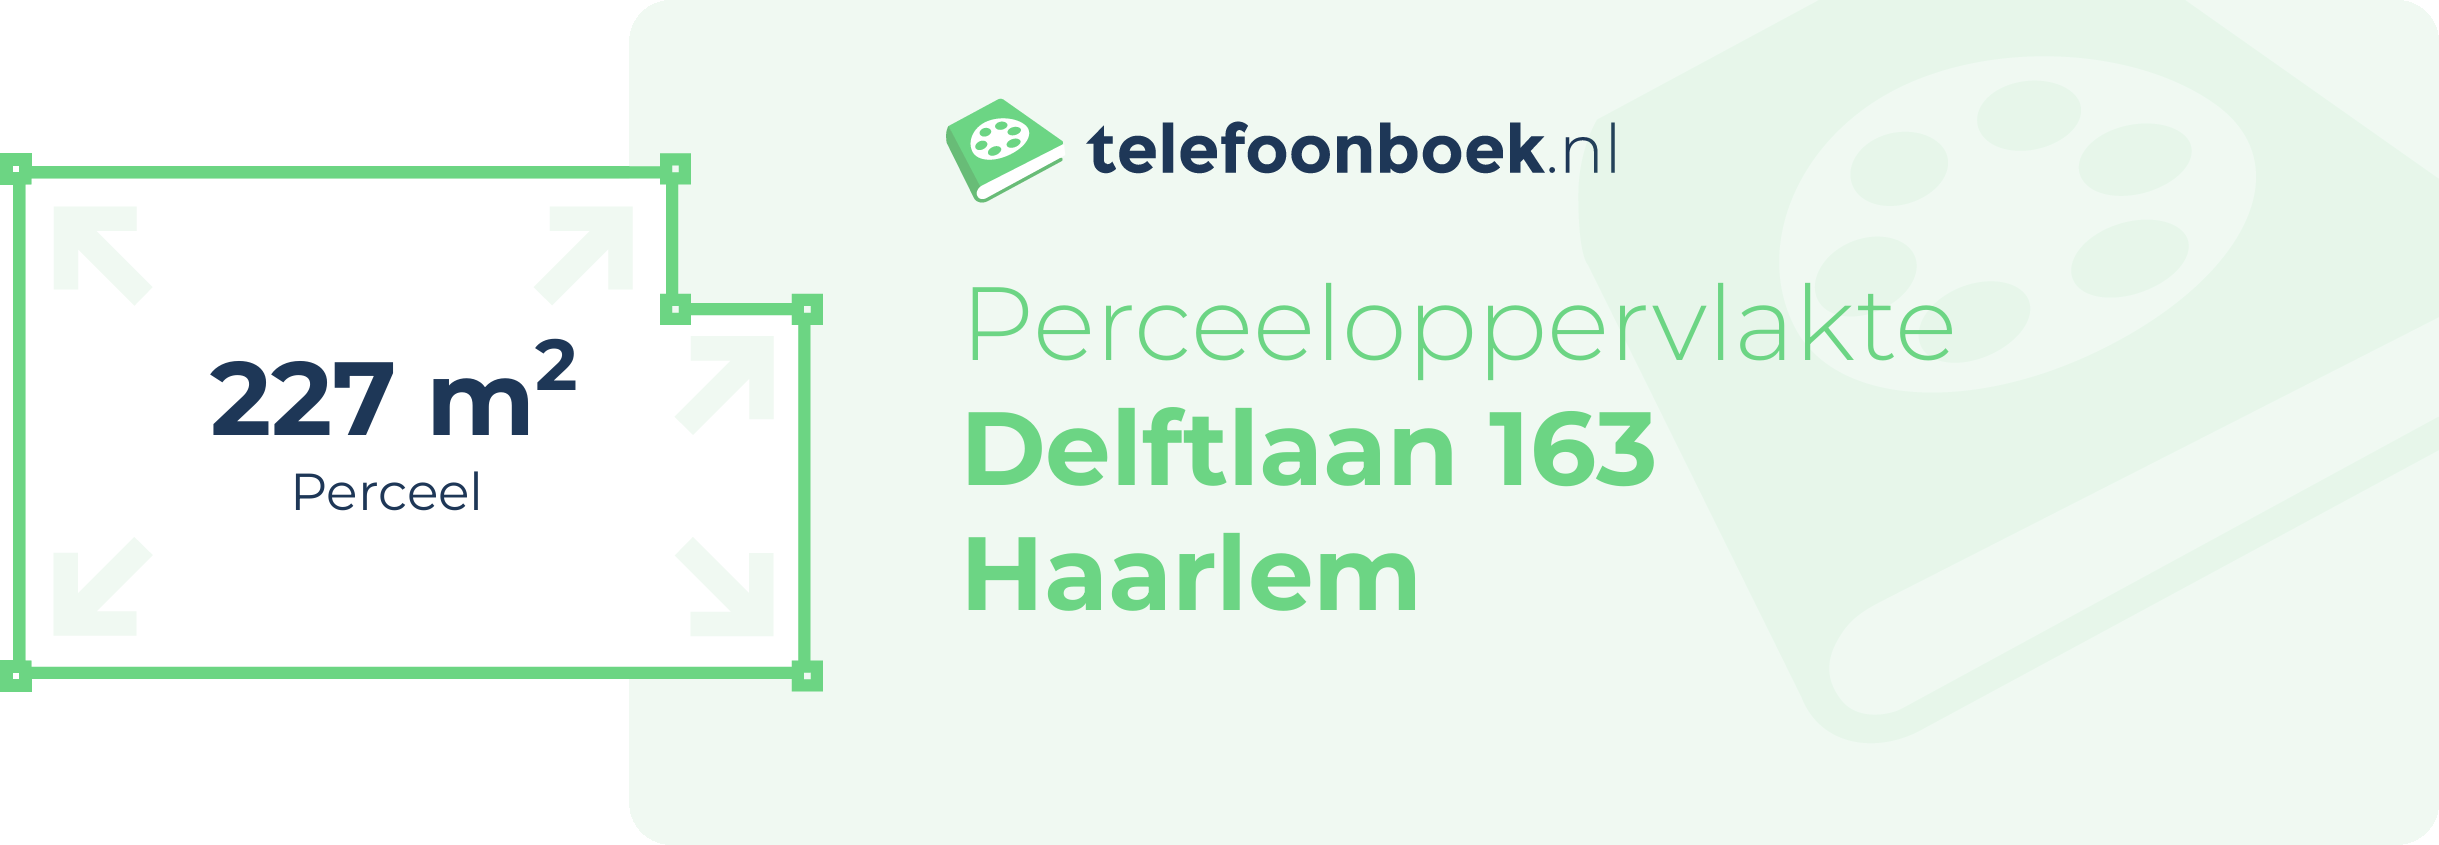 Perceeloppervlakte Delftlaan 163 Haarlem